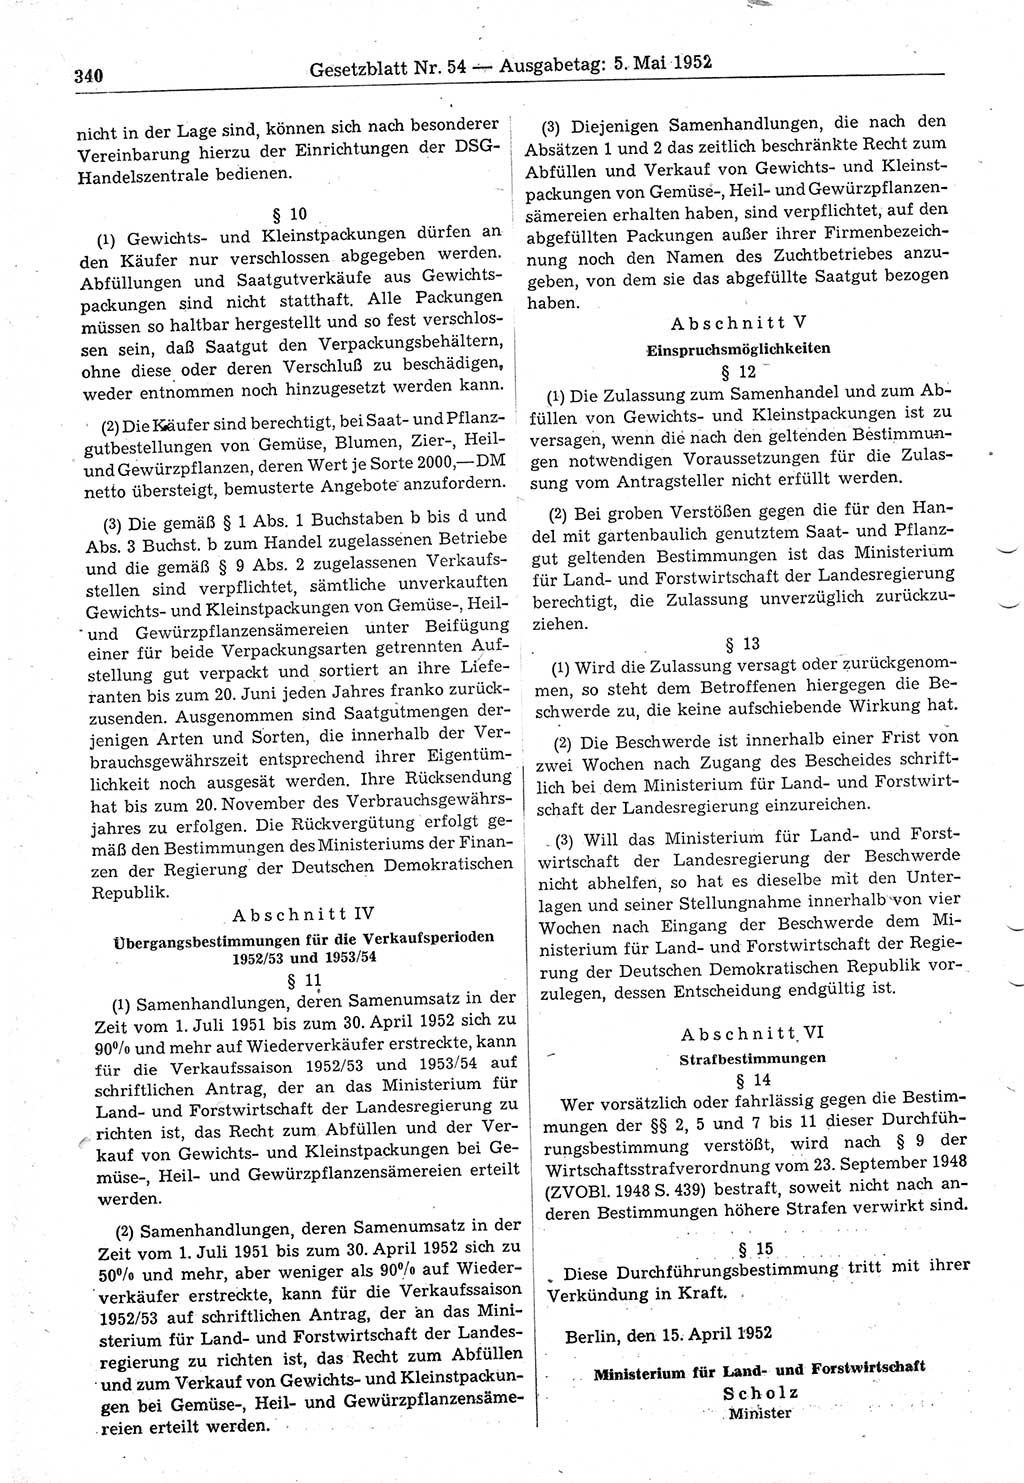 Gesetzblatt (GBl.) der Deutschen Demokratischen Republik (DDR) 1952, Seite 340 (GBl. DDR 1952, S. 340)